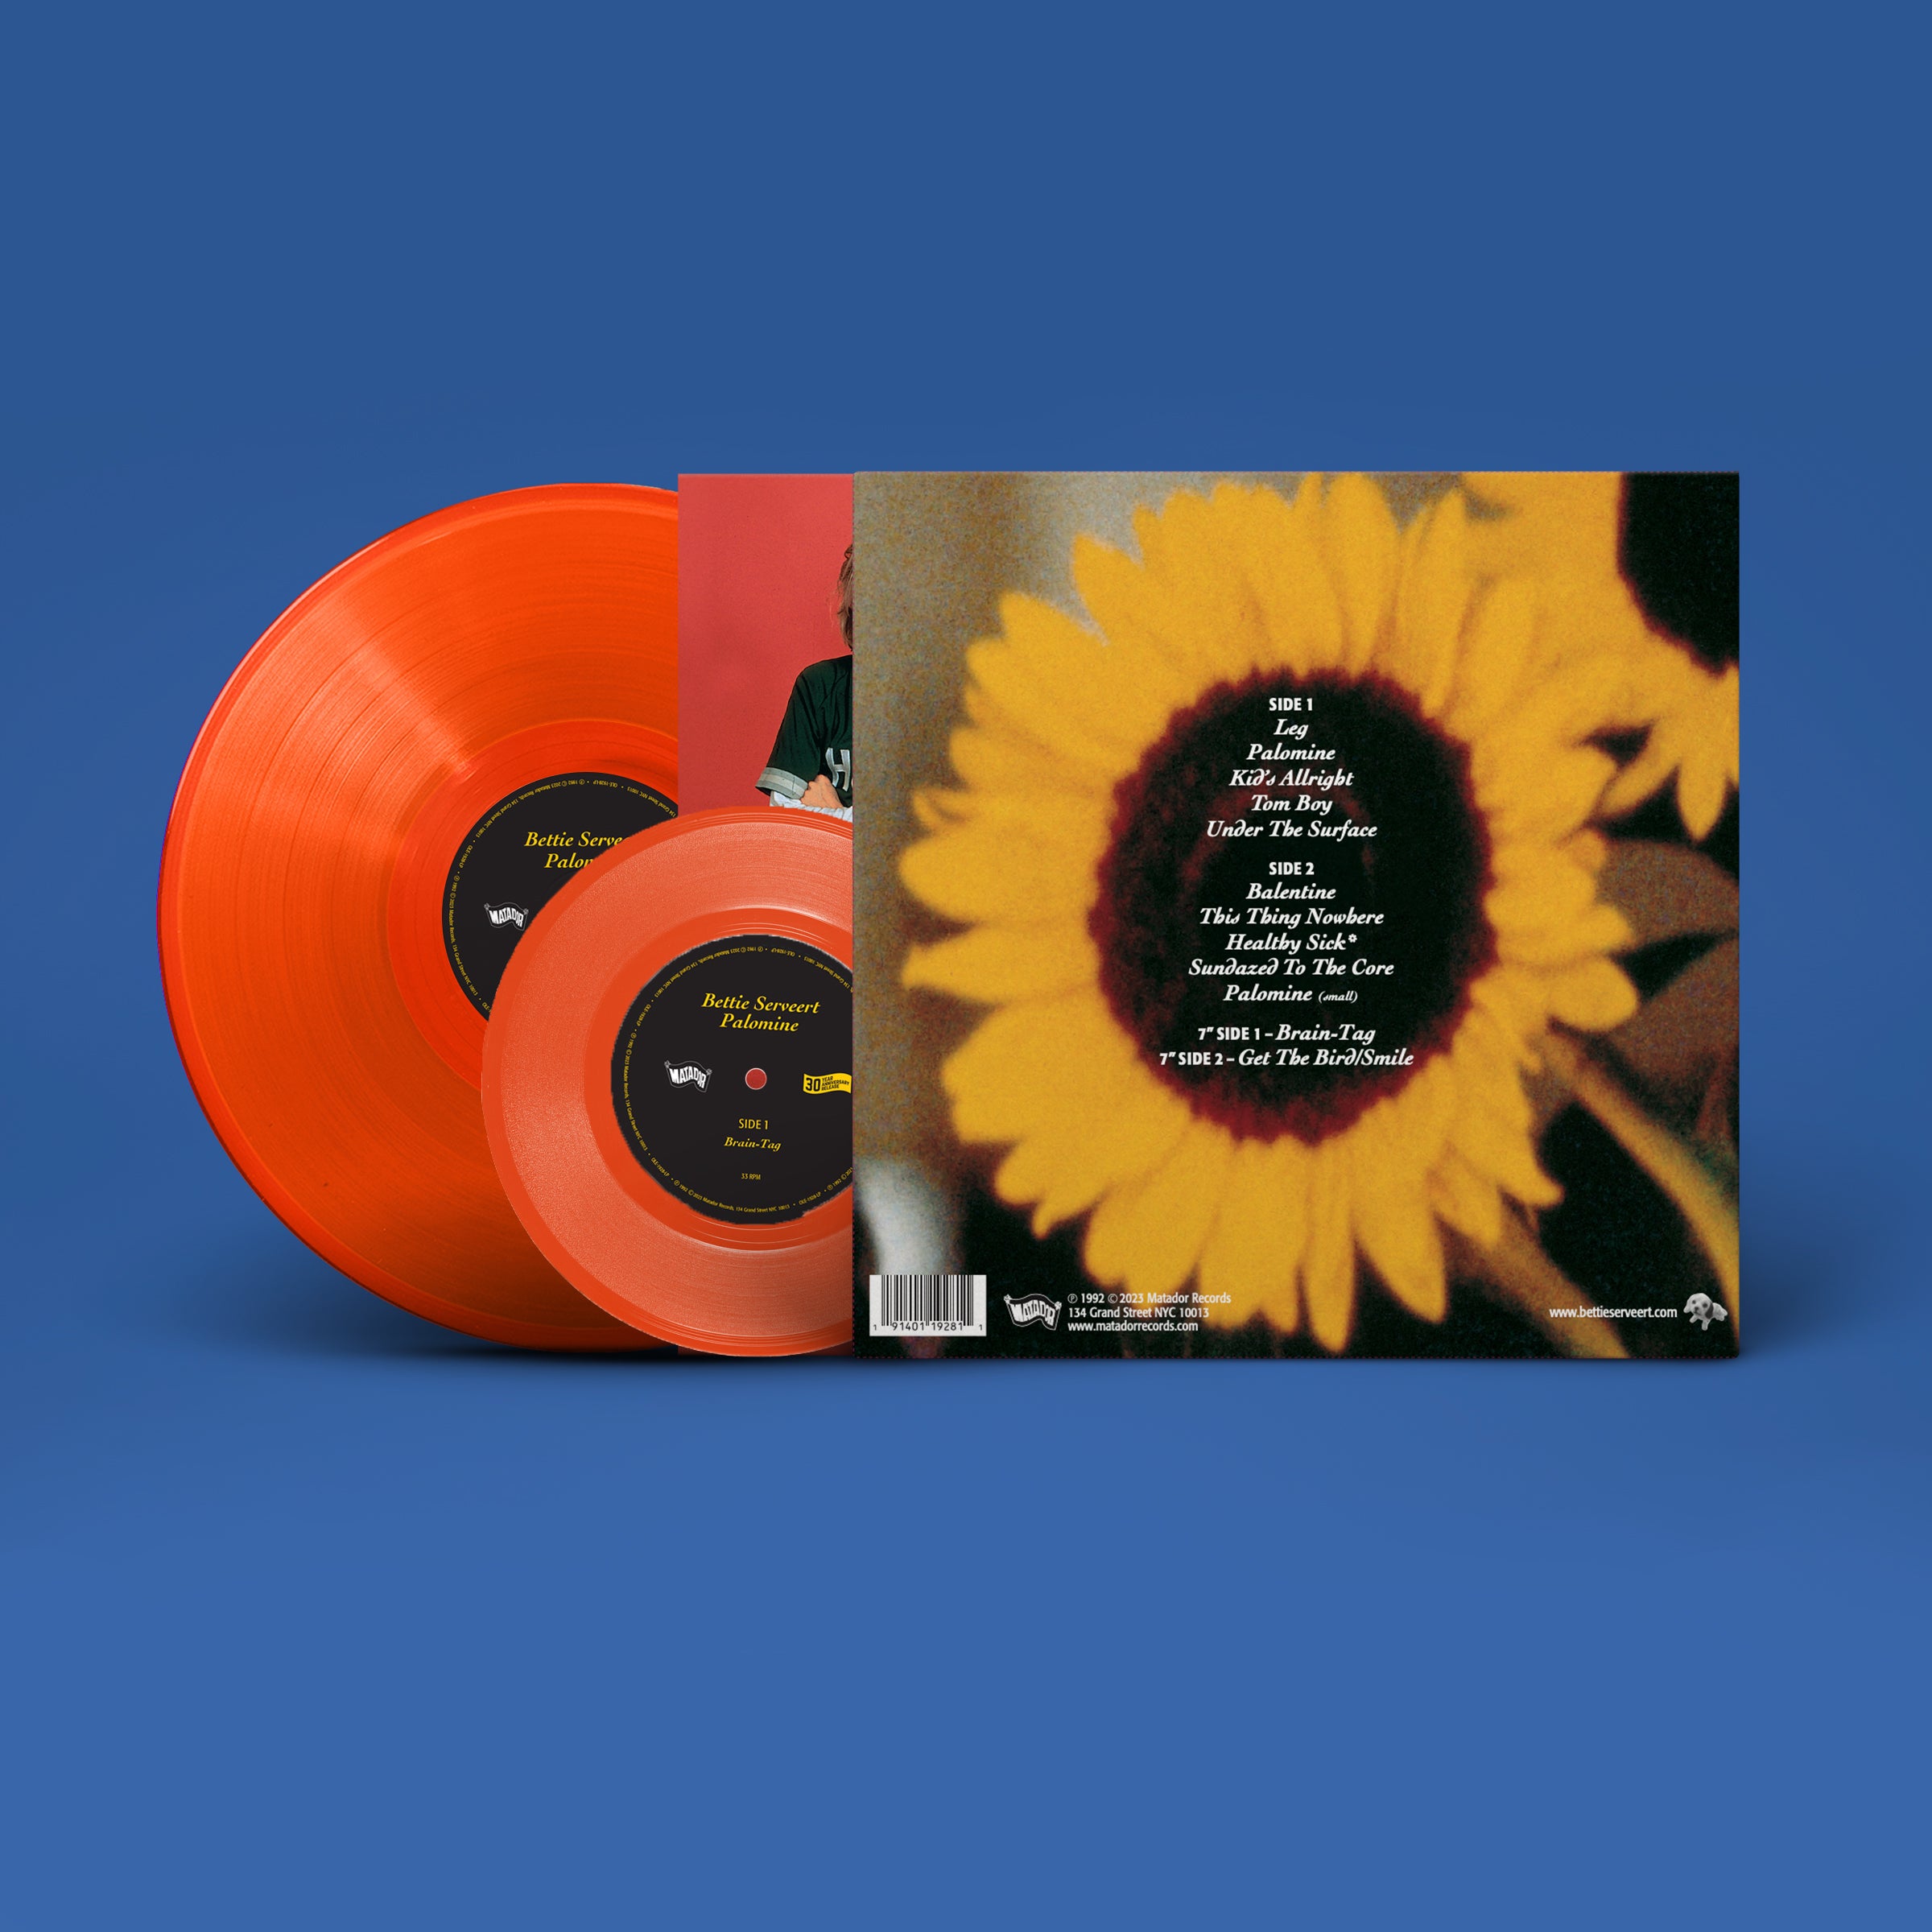 Palomine (30th Anniversary): Deluxe Edition Orange Vinyl LP + Vinyl 7"